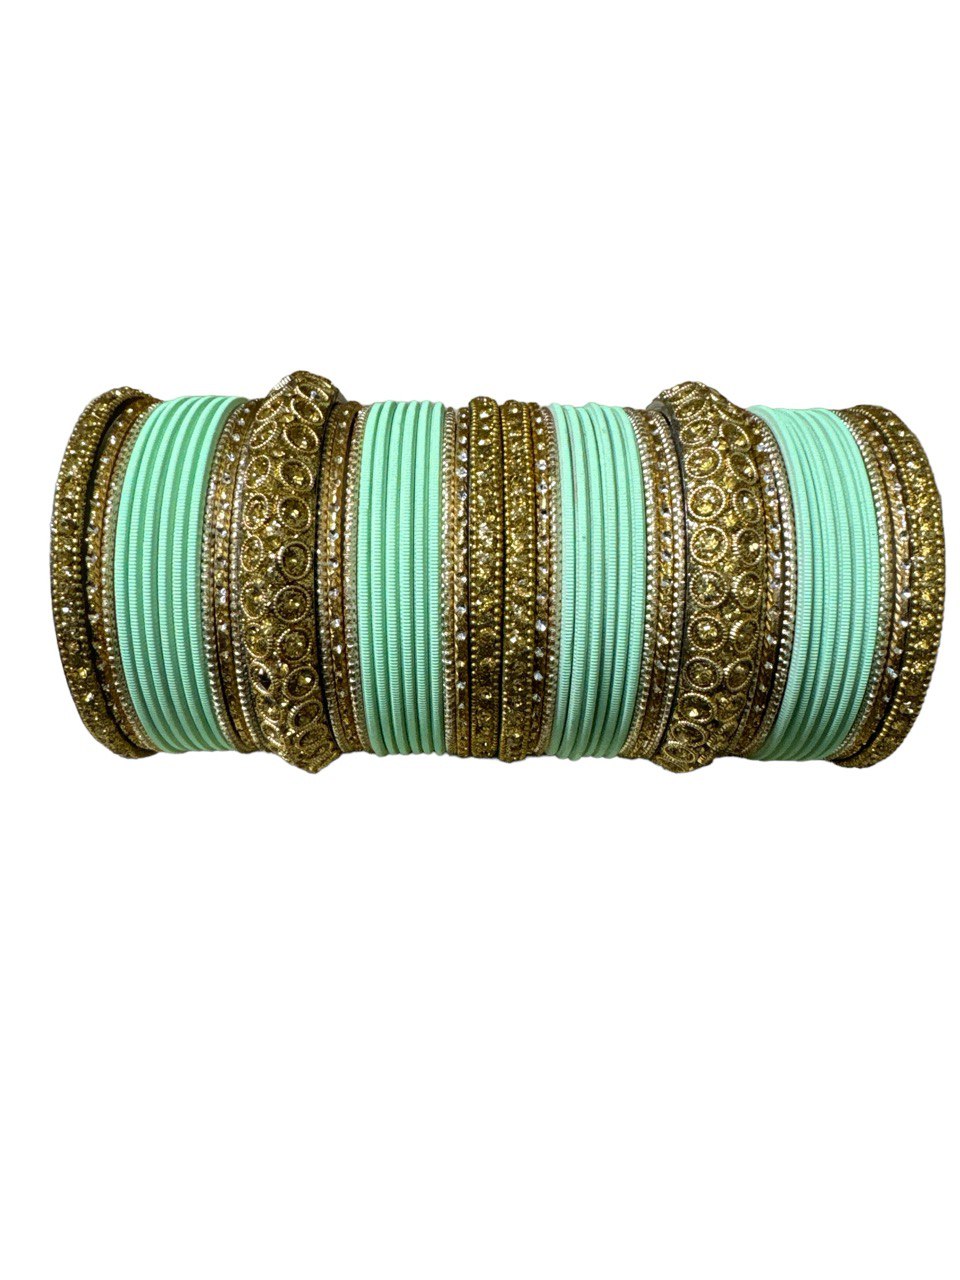 Indian Bridal Both Hand Bracelet/Bangle | Churiyan | Kangan Set #KP1200